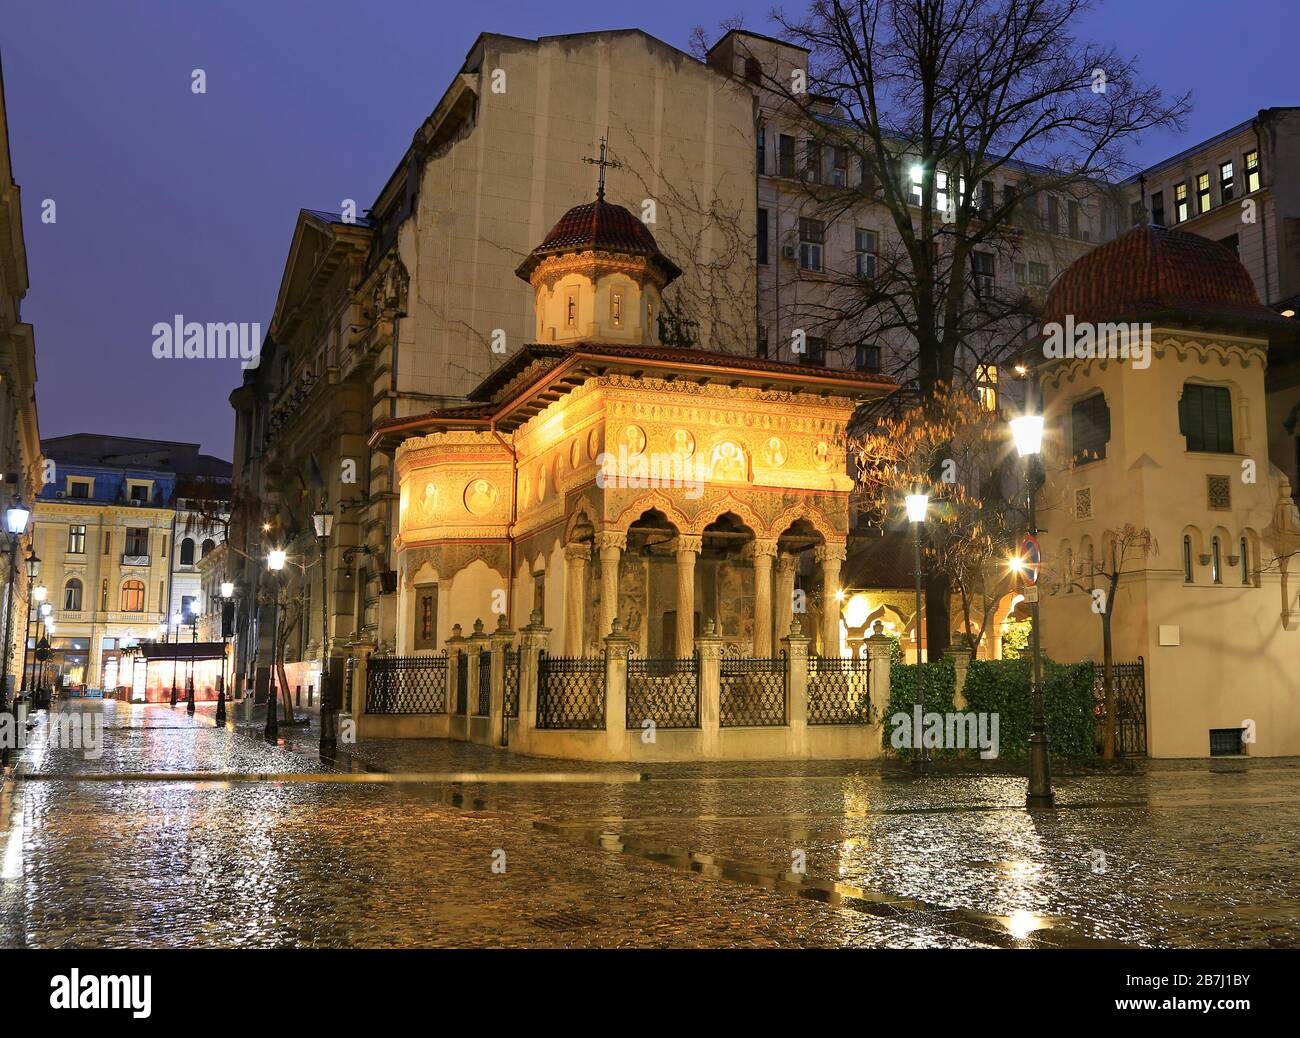 Église de Stavropoleos la nuit, Bucarest. Attraction touristique de la vieille ville en Roumanie Banque D'Images